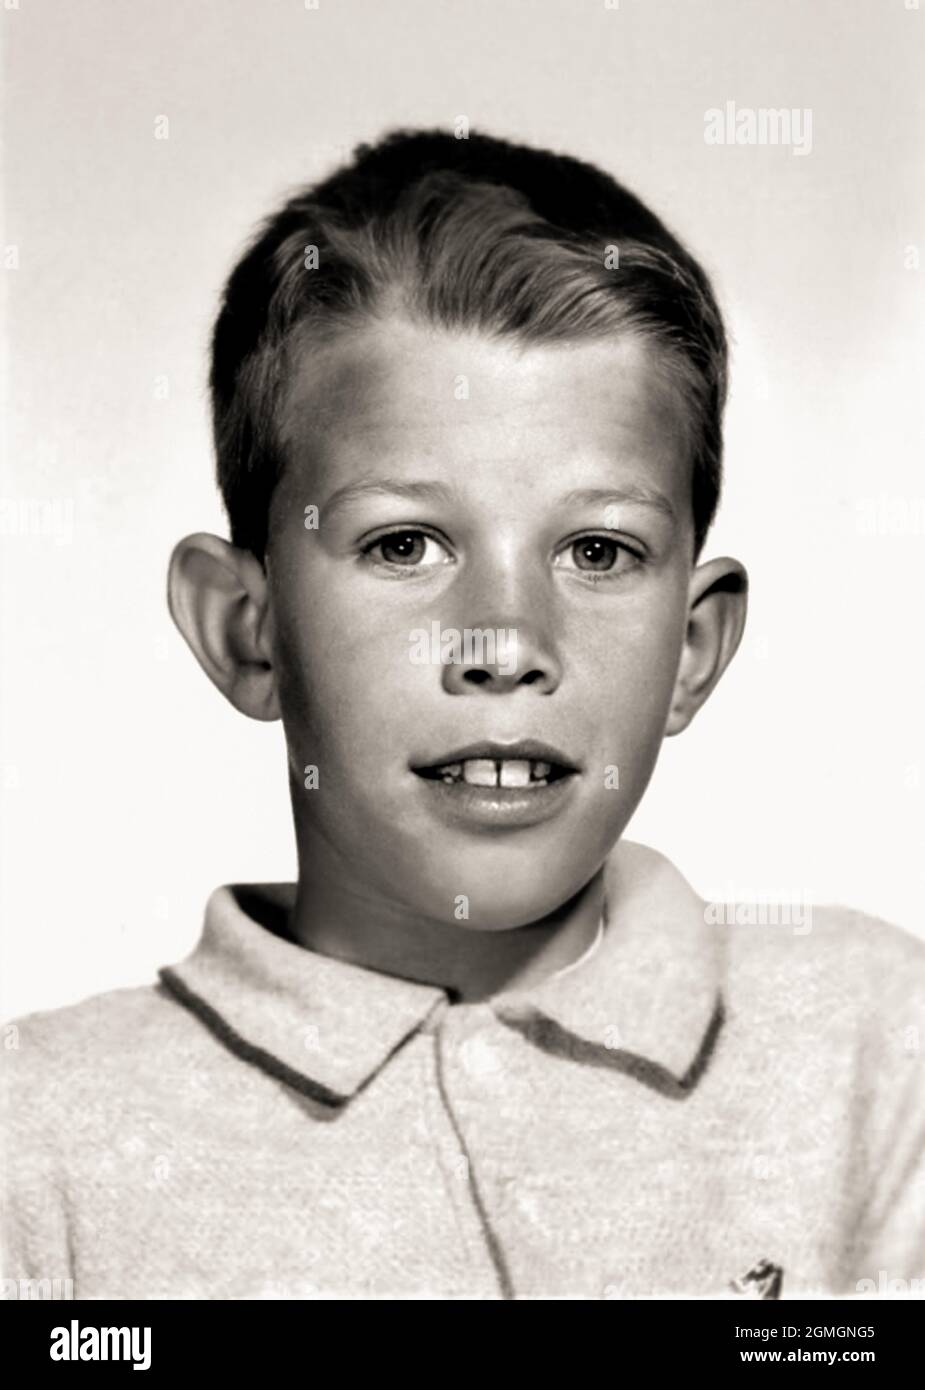 1959 , USA: The celebrated american singer and composer TOM WAITS ( born 7 december 1949 ) when was a young boy aged 10 . Unknown photographer. - HISTORY - FOTO STORICHE - personalità da bambino bambini da giovane - personality personalities when was young - INFANZIA - CHILDHOOD - BAMBINO  - BAMBINI - CHILDREN - CHILD - MUSIC - MUSICA - cantante - COMPOSITORE - PORTRAIT - RITRATTO  --- ARCHIVIO GBB Stock Photo